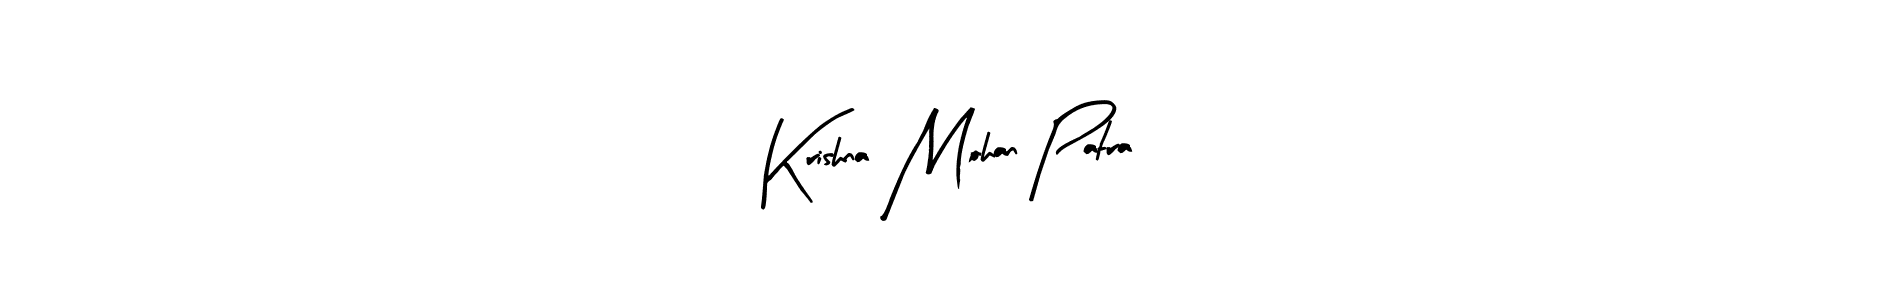 How to Draw Krishna Mohan Patra signature style? Arty Signature is a latest design signature styles for name Krishna Mohan Patra. Krishna Mohan Patra signature style 8 images and pictures png